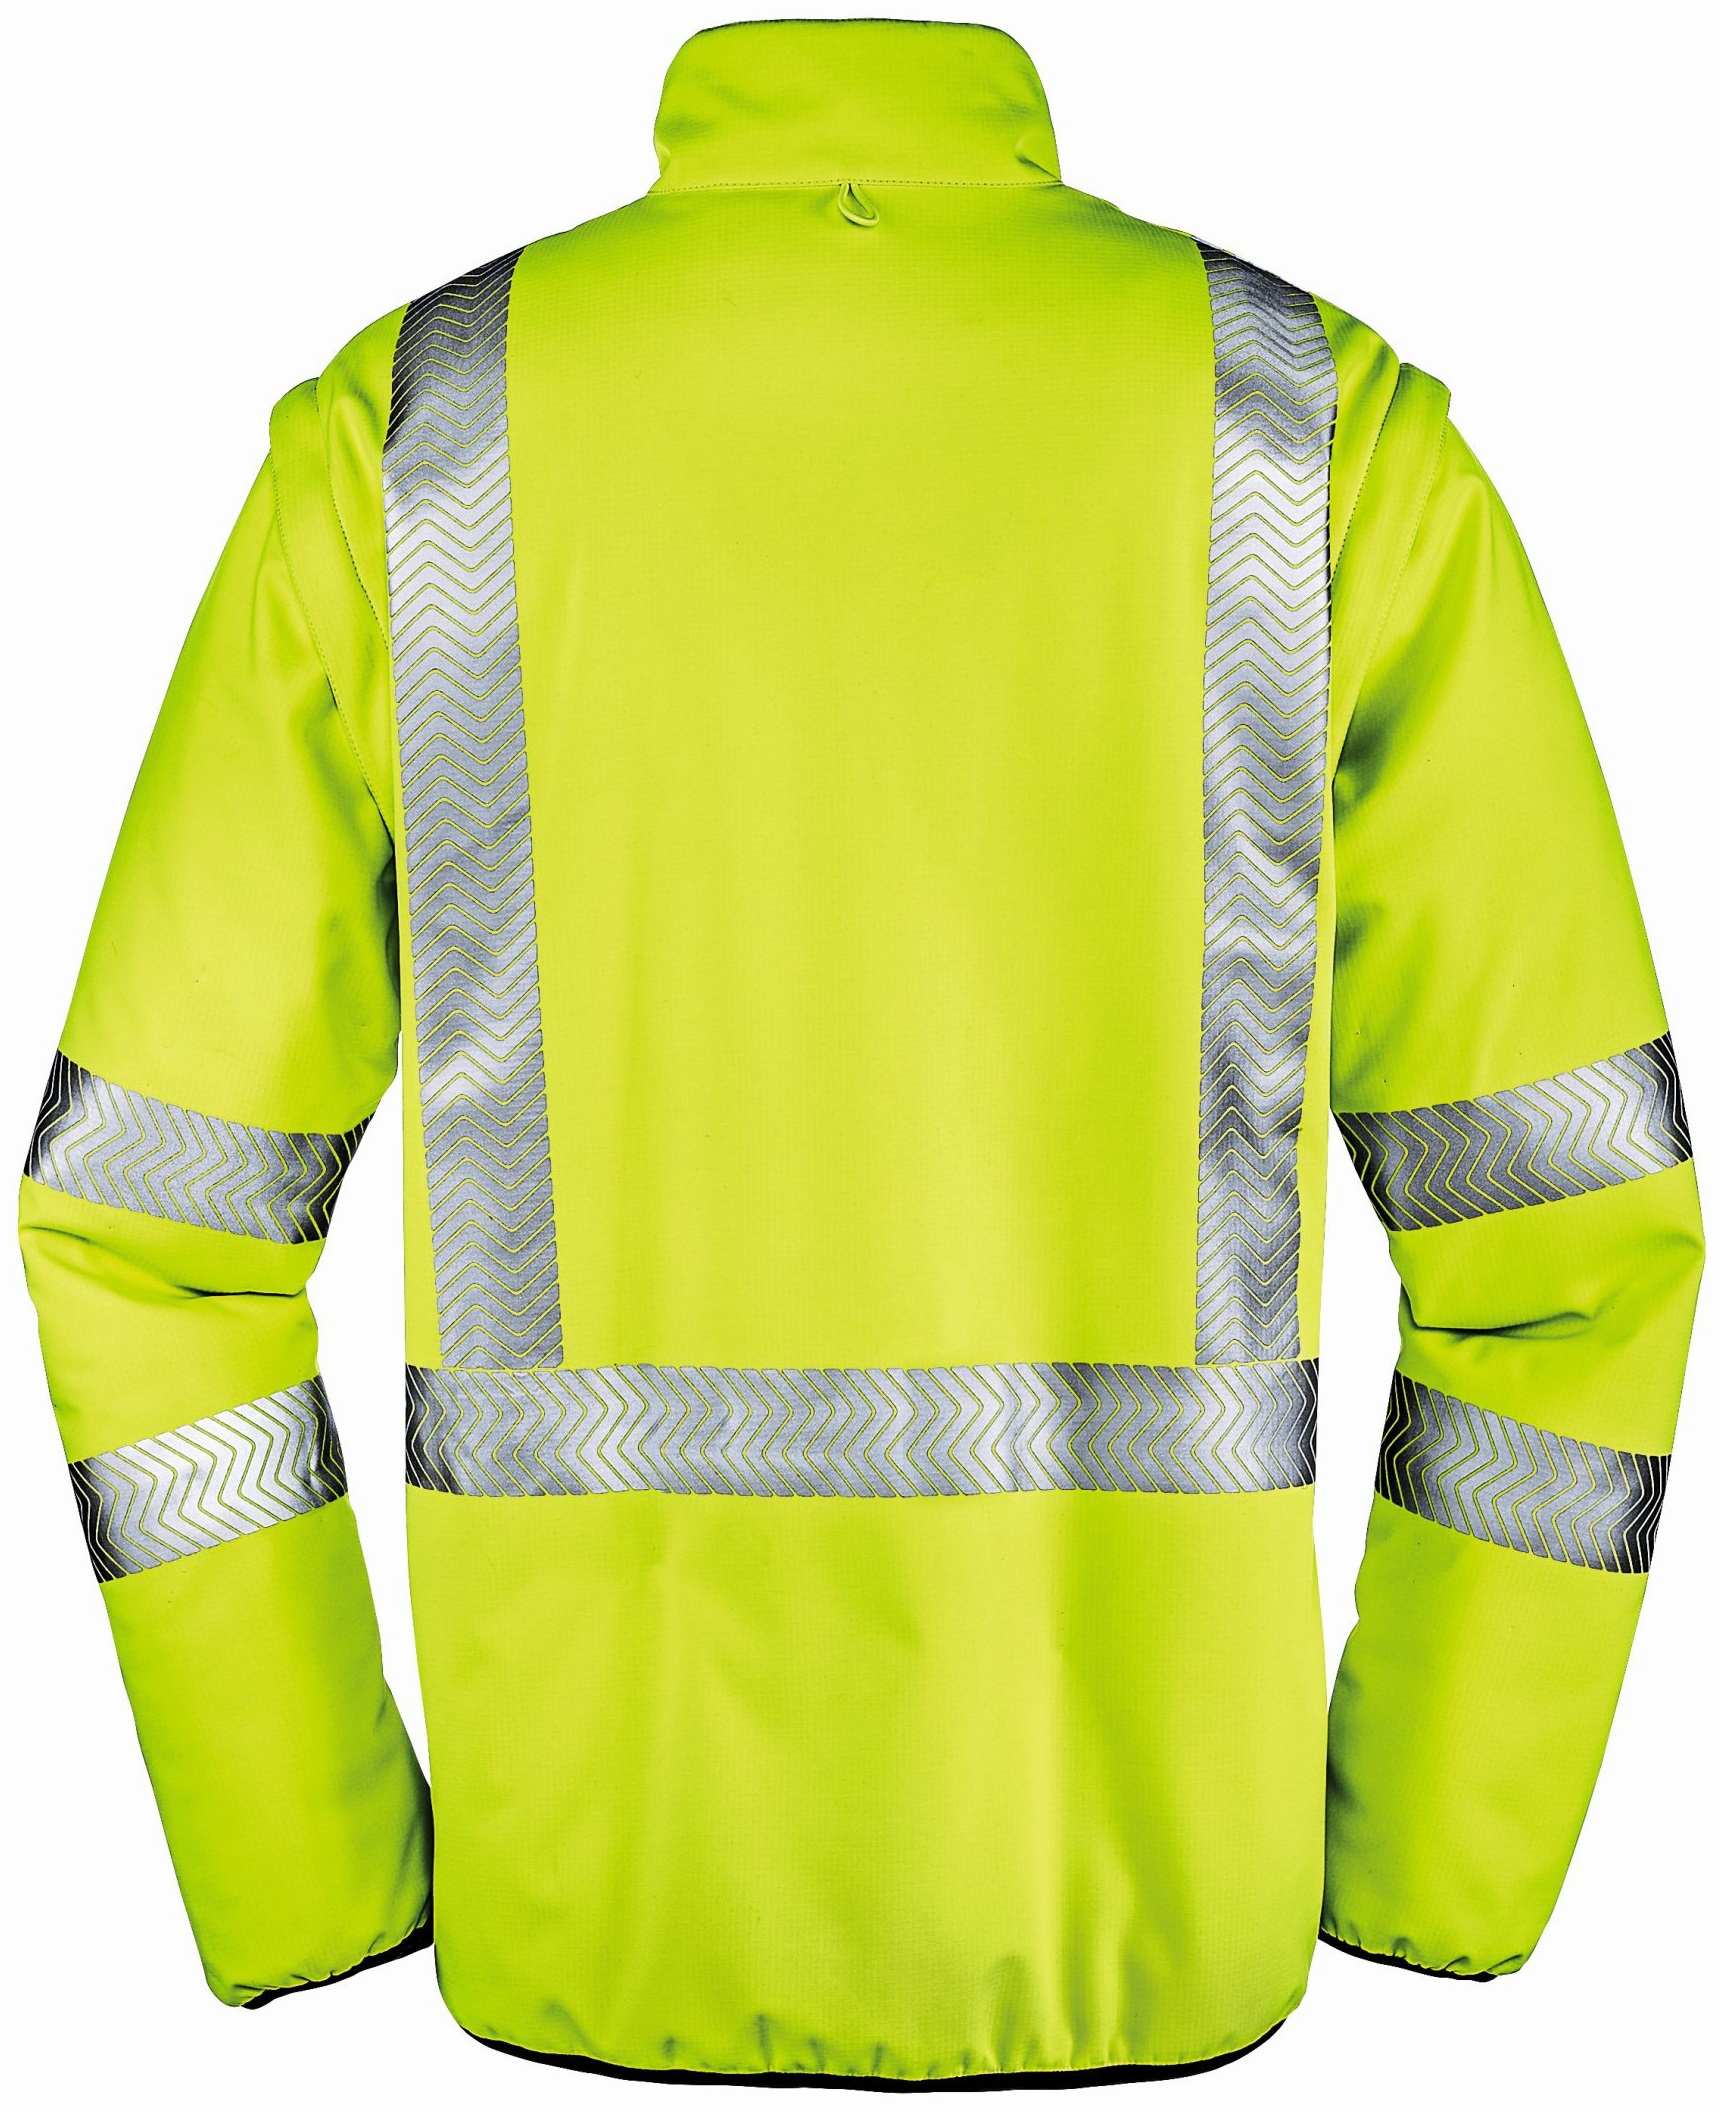 BIG-4-Protect-Warnschutz, Warn-Wetterschutz-Jacke, Reno, leuchtgelb